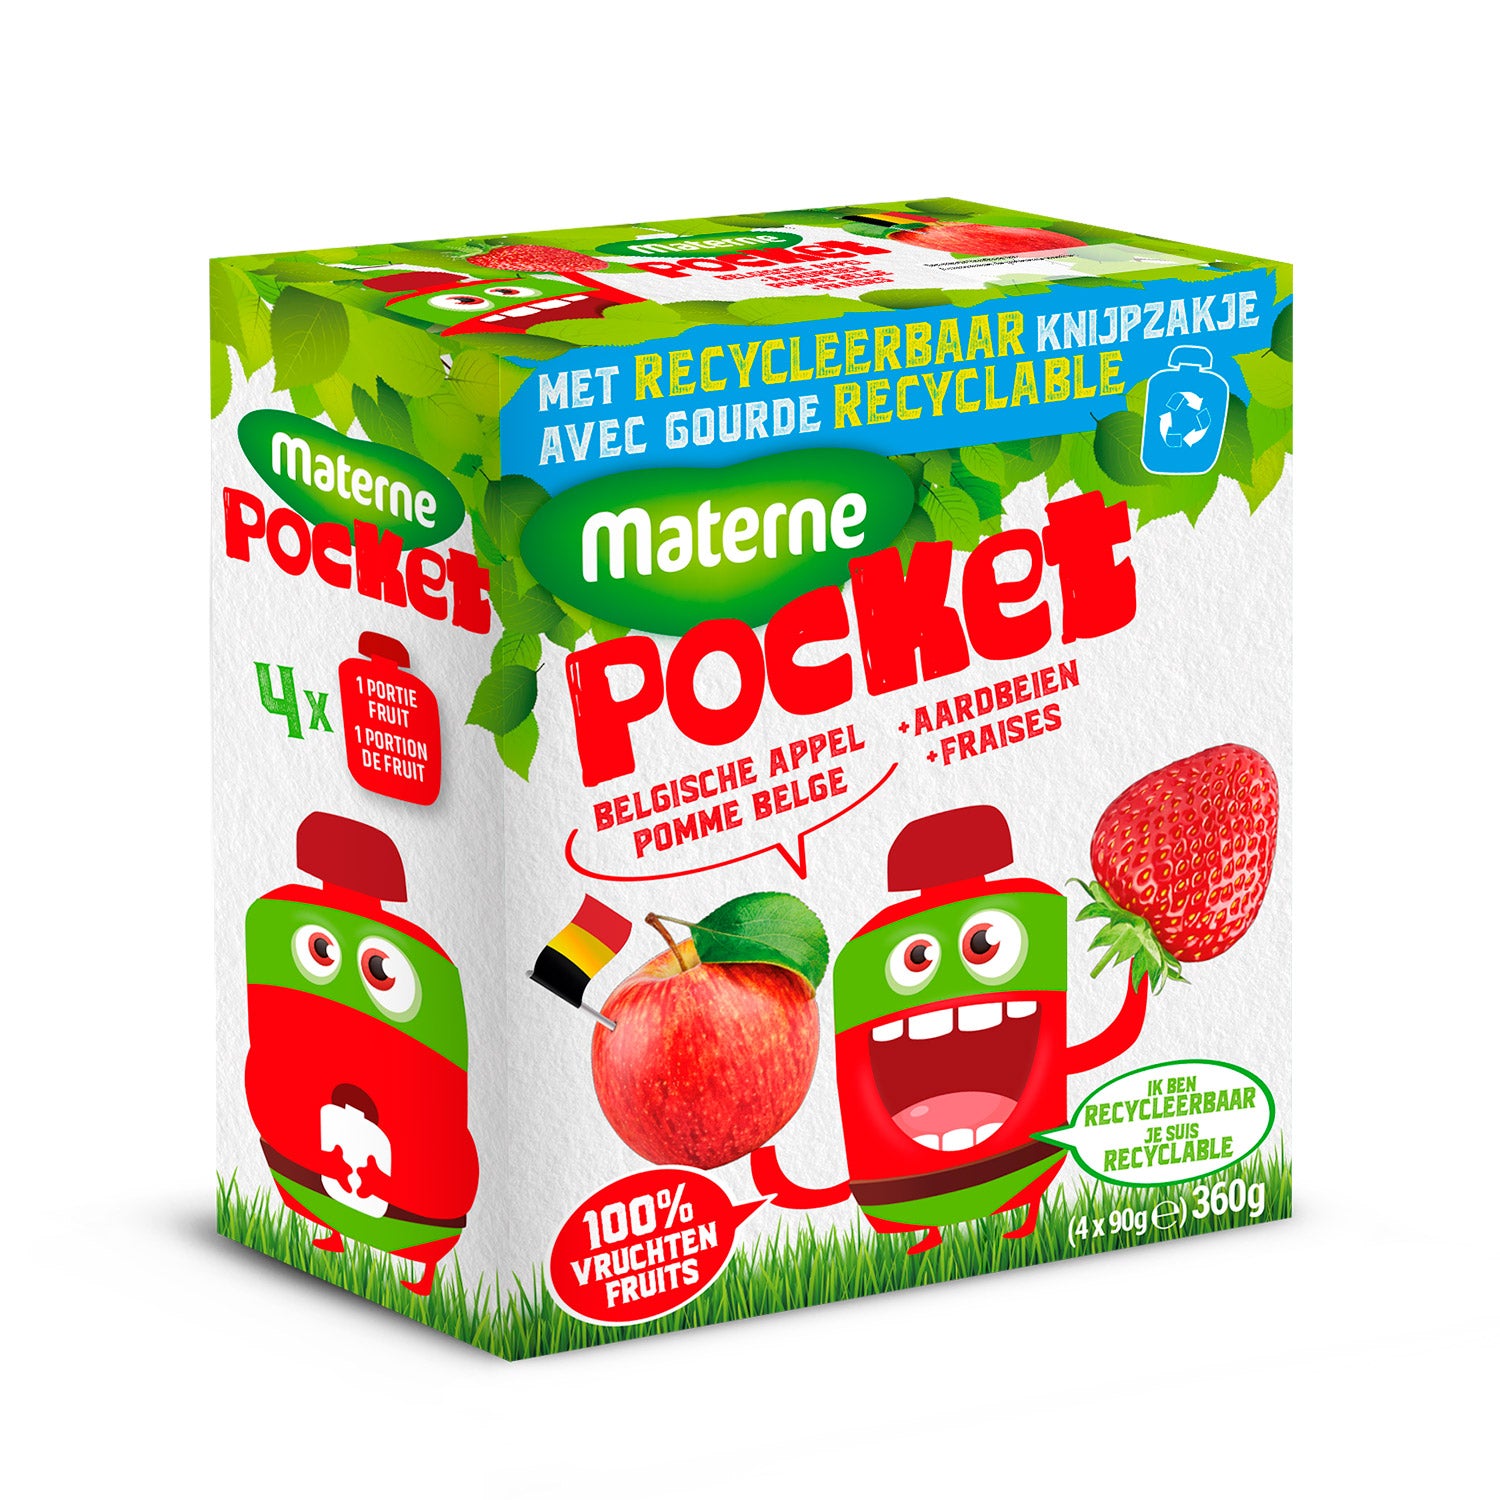 Materne Pocket <br>Belgische appel - aardbei